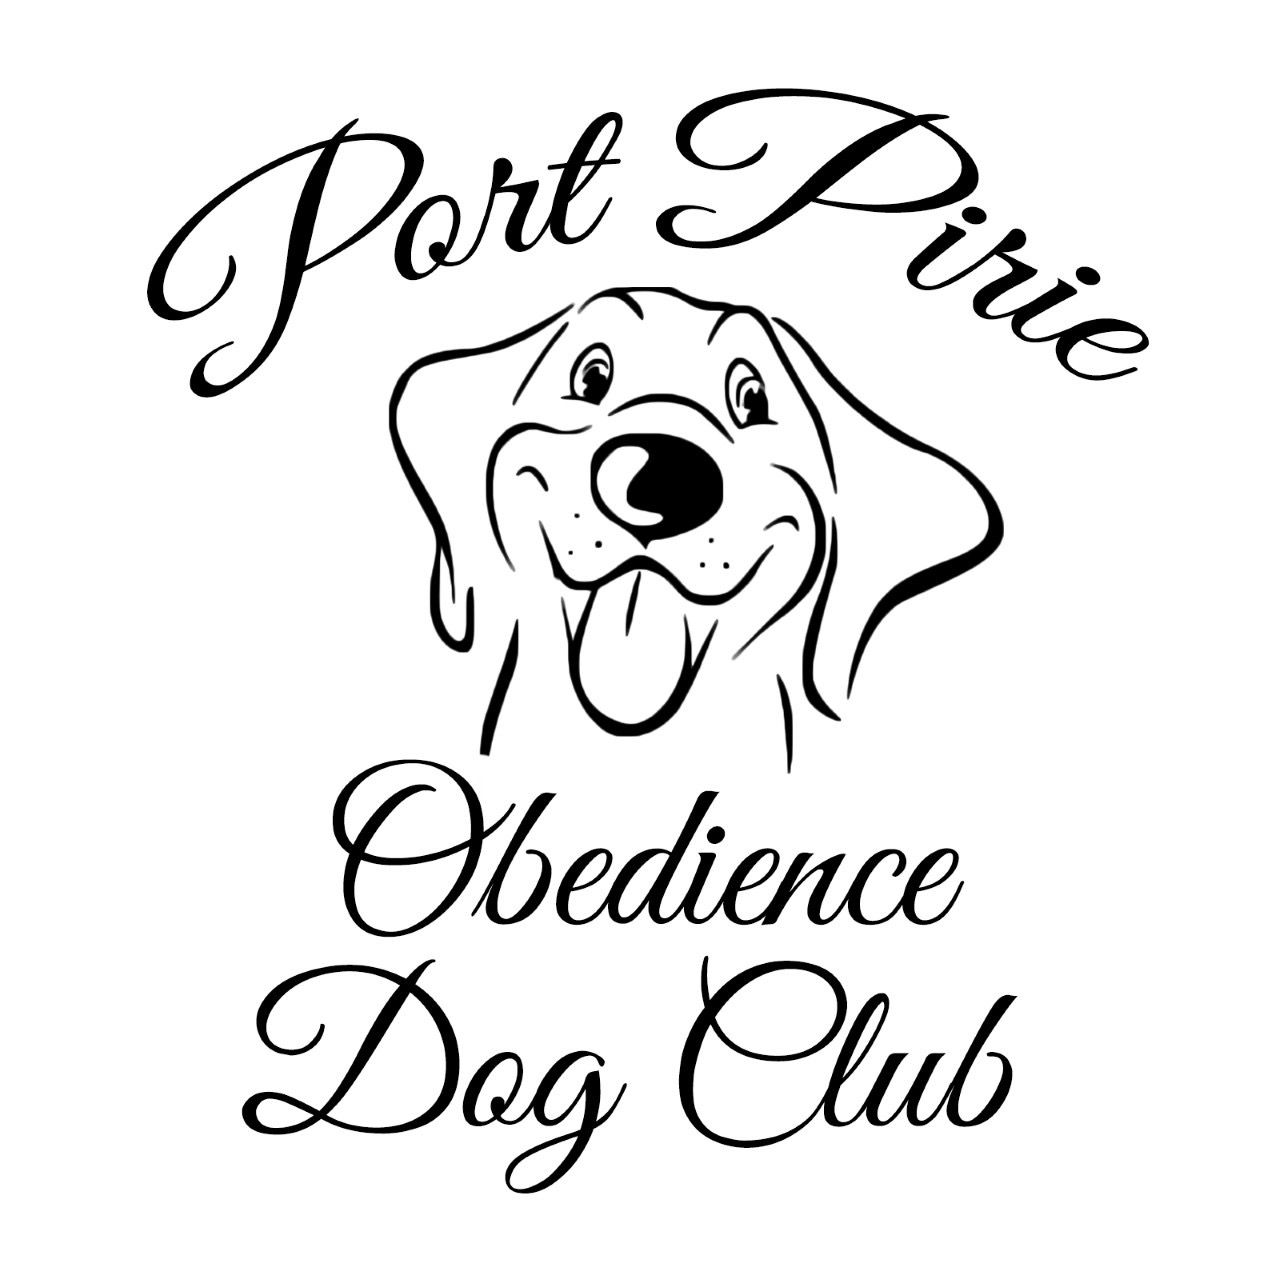 Port Pirie Obedience Dog Club Inc